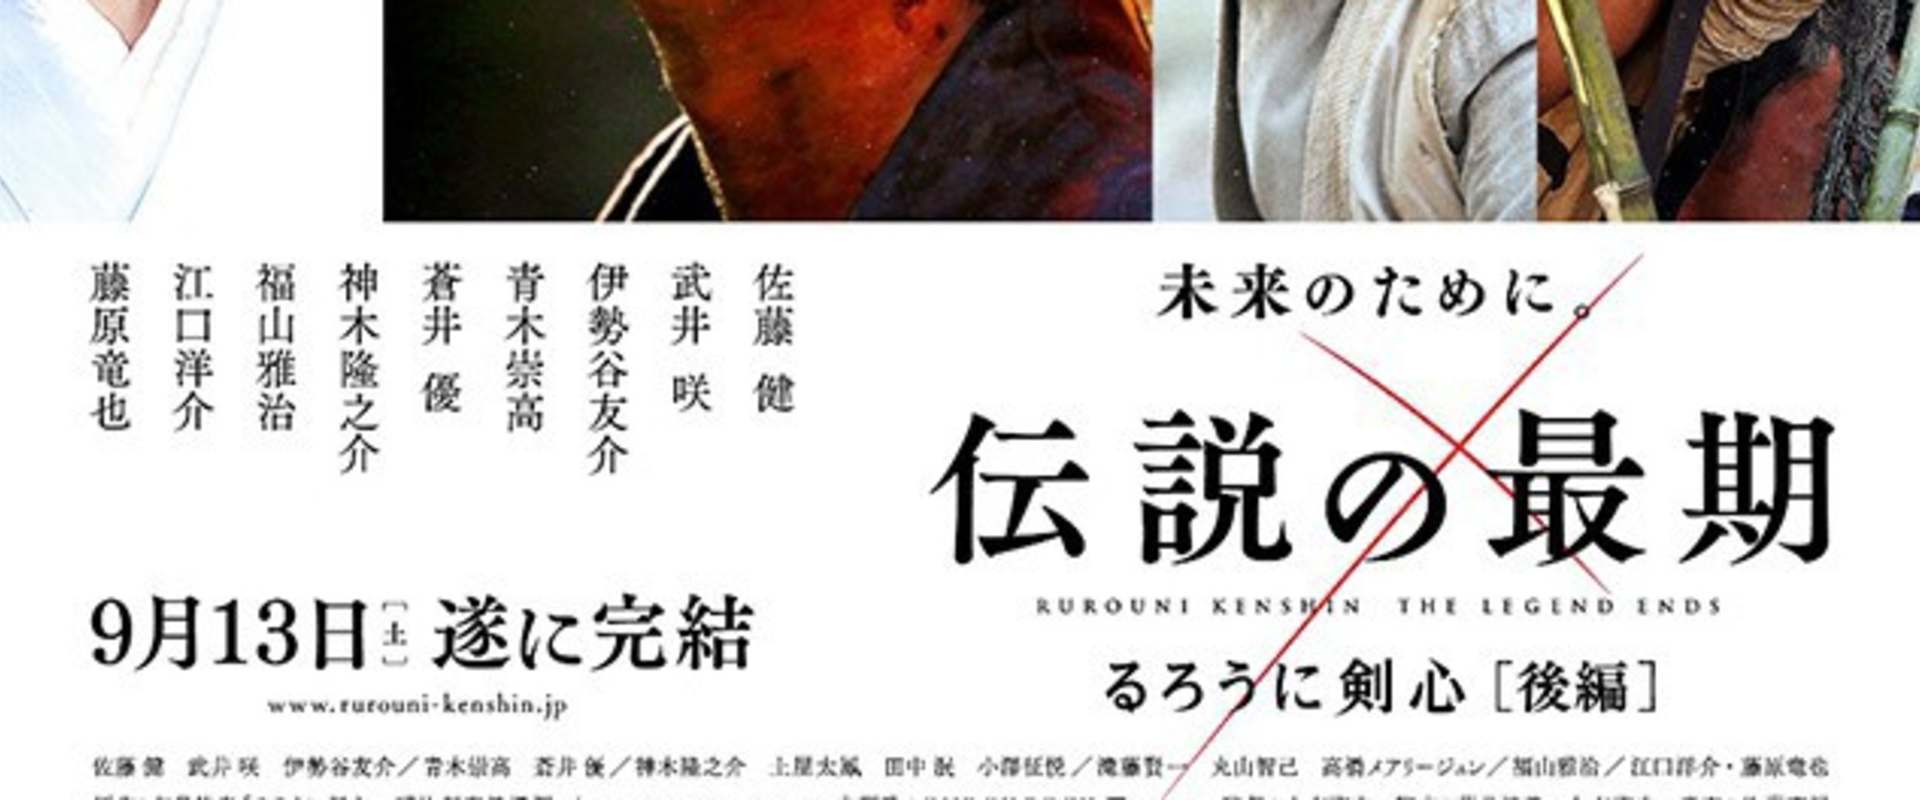 Rurôni Kenshin: Densetsu no saigo-hen background 1